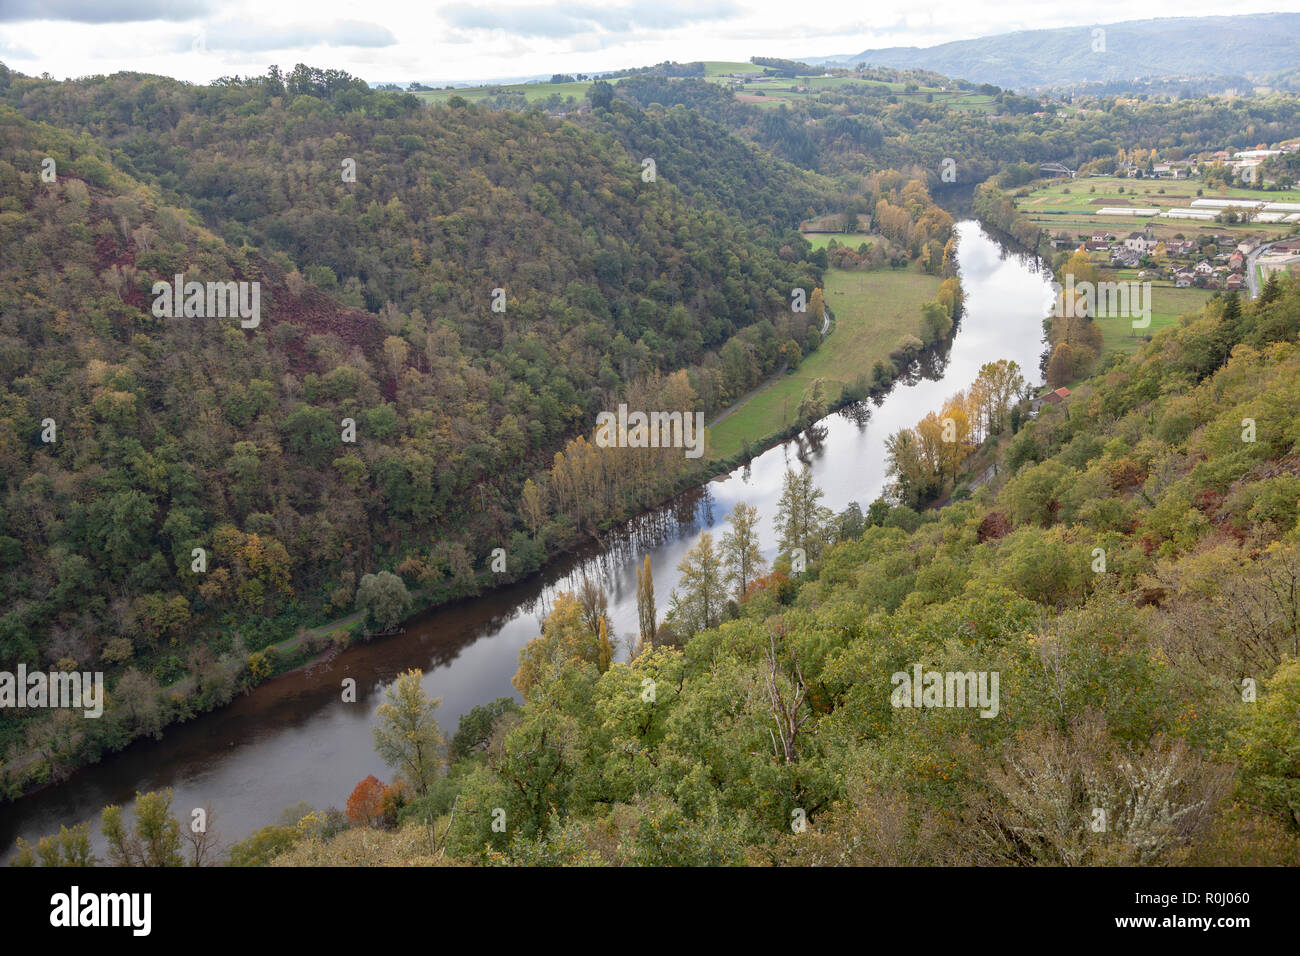 La vallée de la rivière Lot, à l'automne (France). Près du 'Port d'Agrès', le Lot - Affluent de la Garonne - s'écoule paisiblement vers l'ouest. Banque D'Images